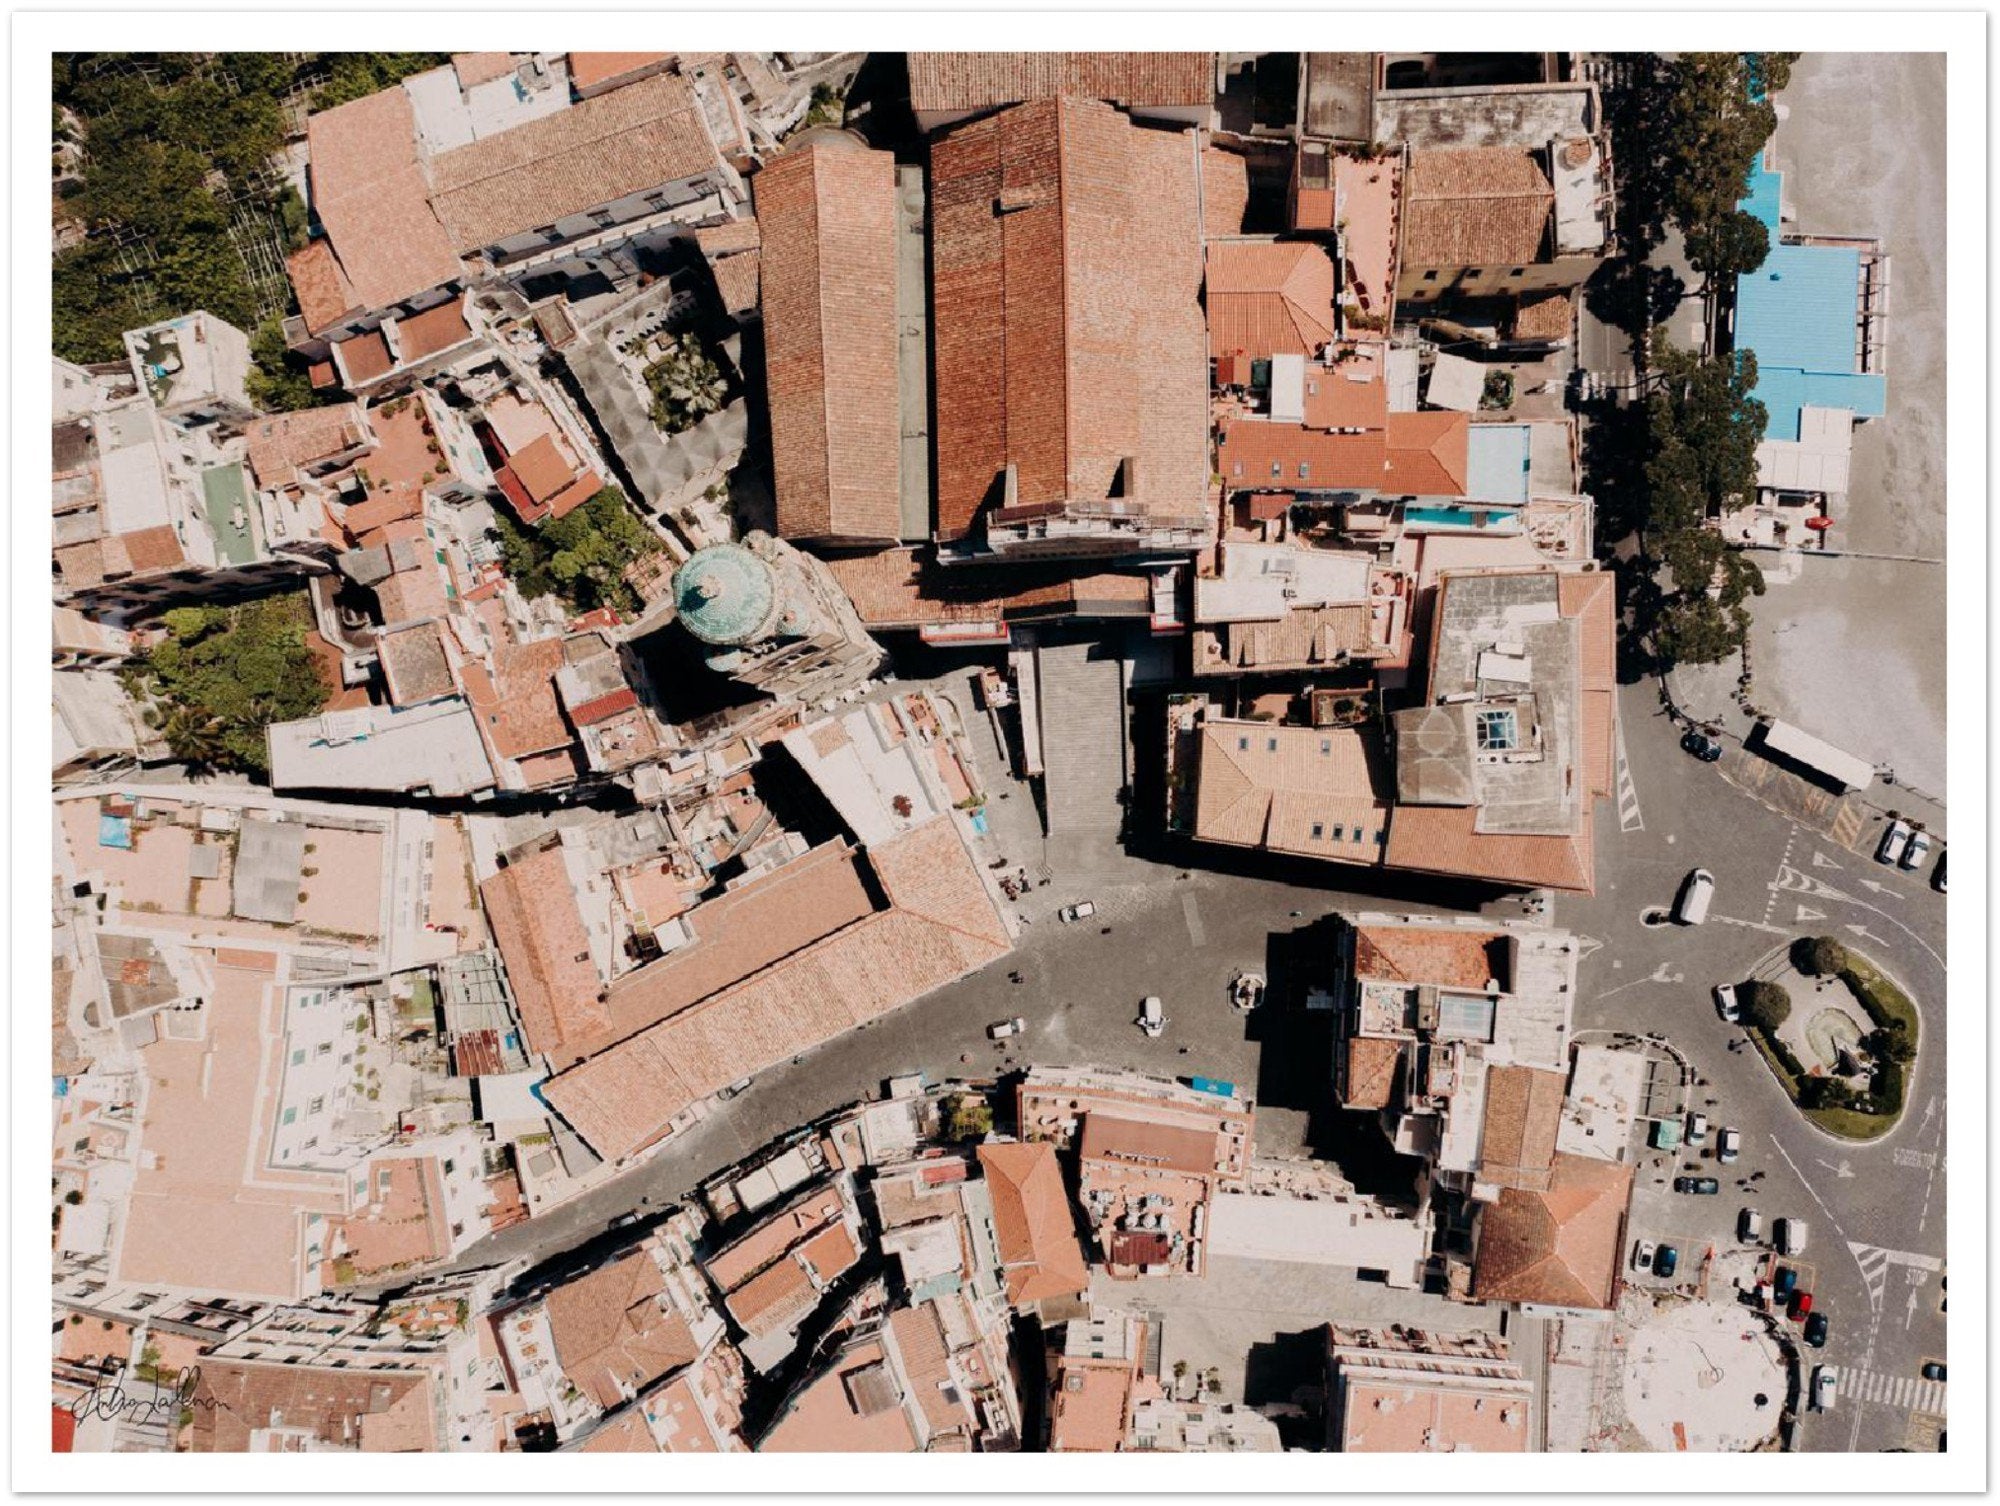 Amalfi Main Square Aerial View Premium Semi-Glossy Print